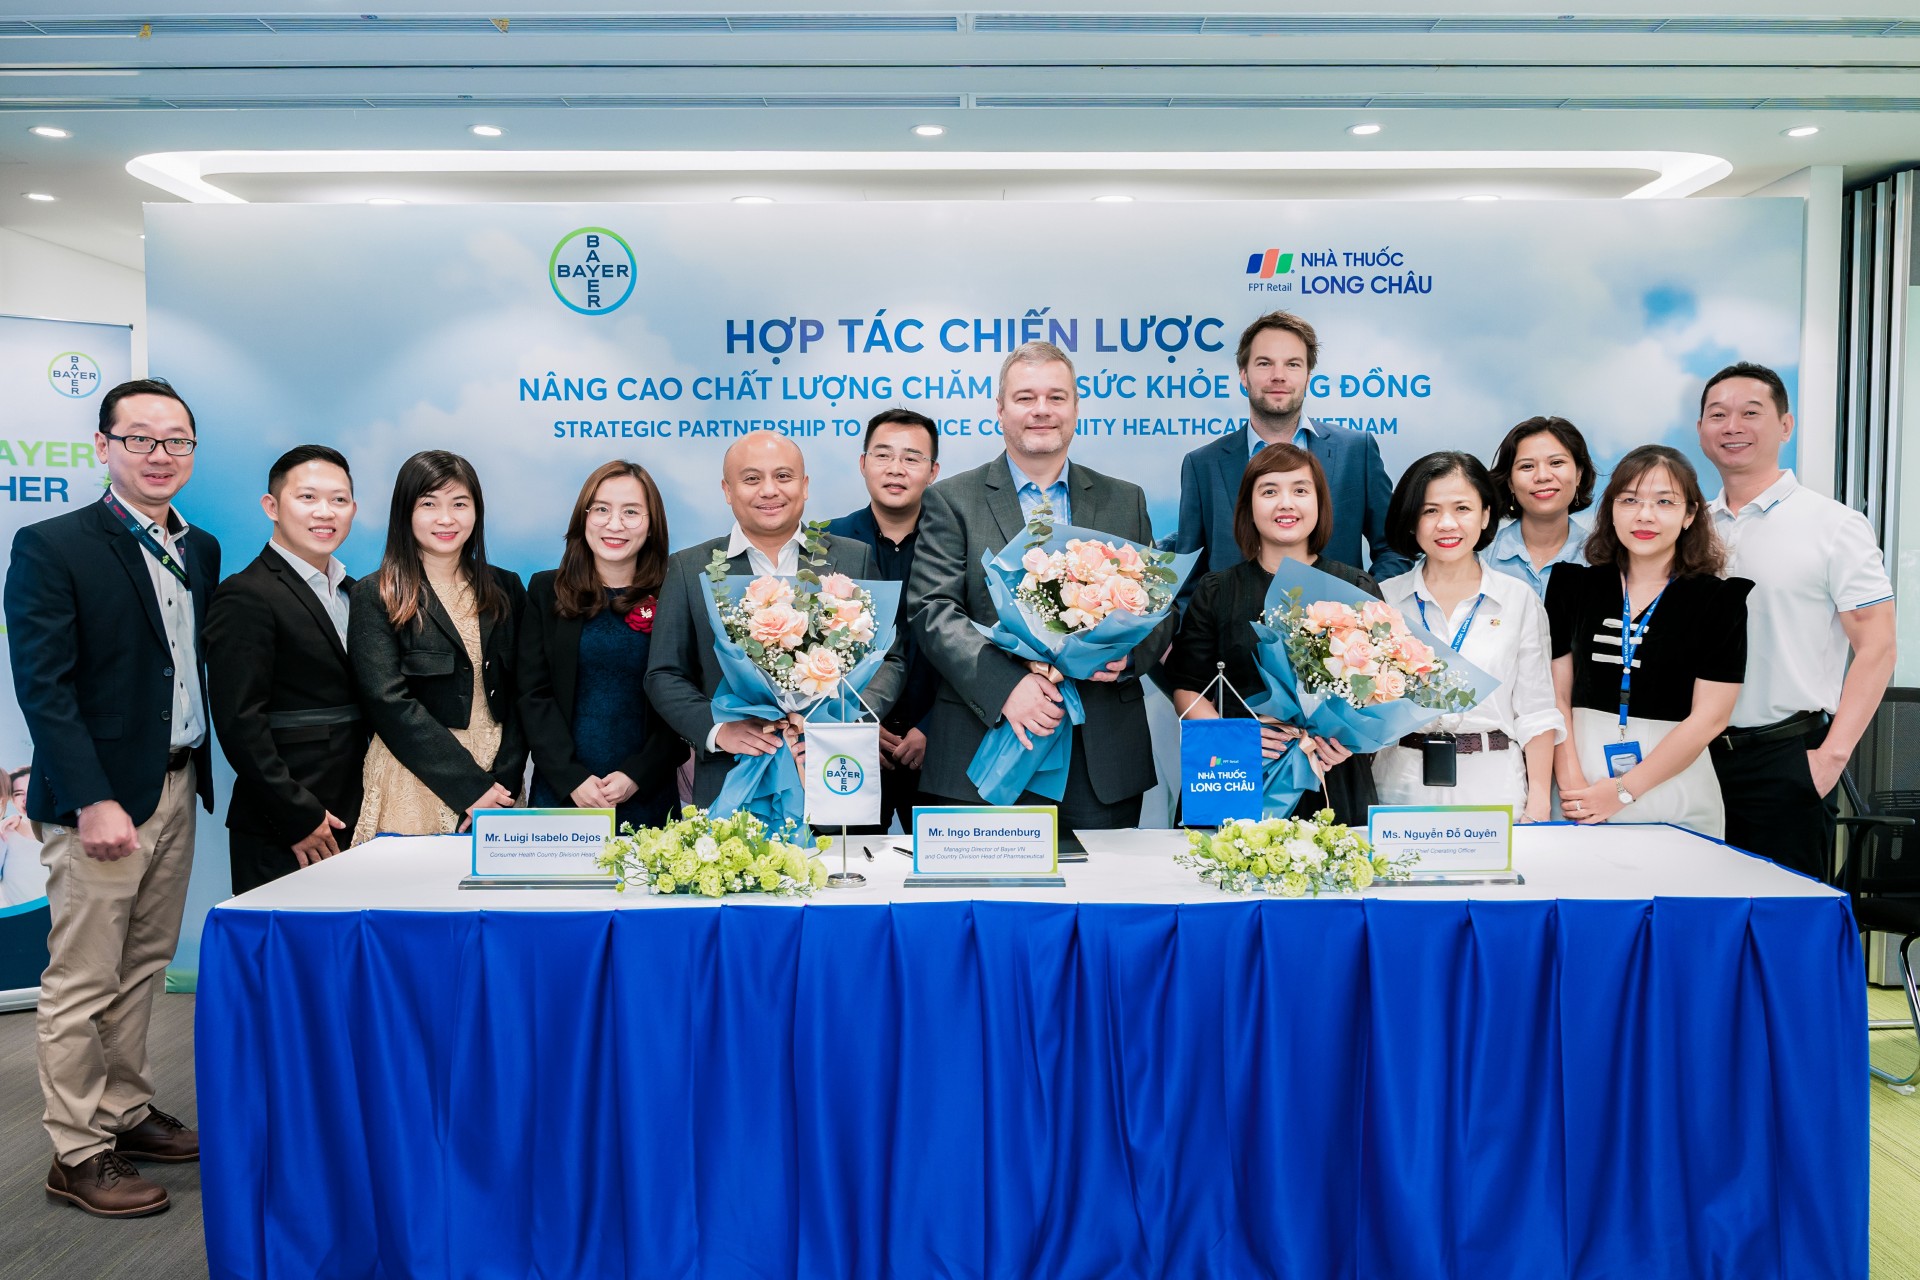 Chuỗi nhà thuốc FPT Long Châu và hãng dược Bayer Việt Nam đã ký kết hợp tác về đào tạo, nâng cao chuyên môn cho dược sĩ vào ngày 03/03/2023. 